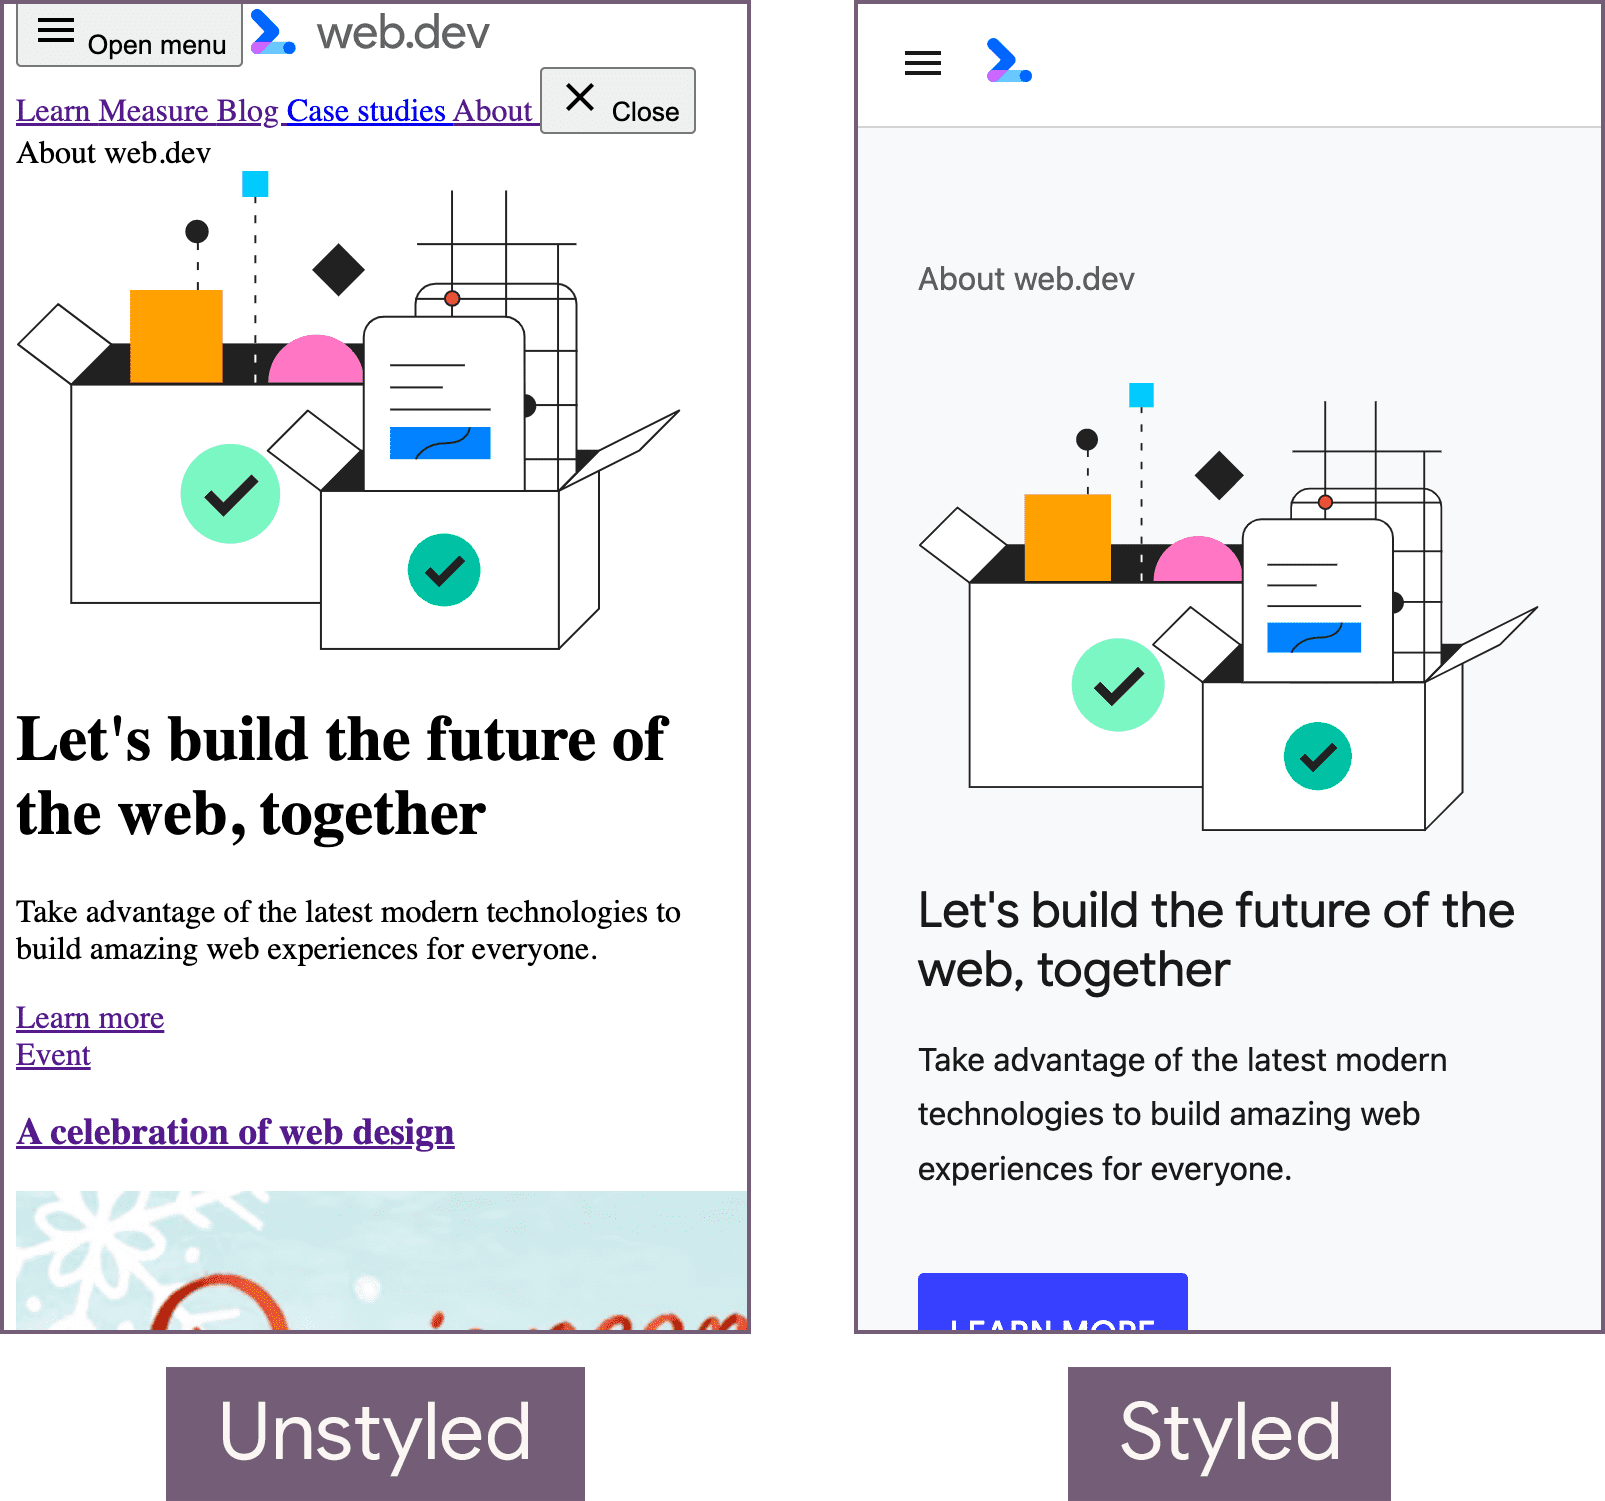 La página principal de web.dev en un estado sin estilo (izquierda) y con el estado con estilo (derecha).